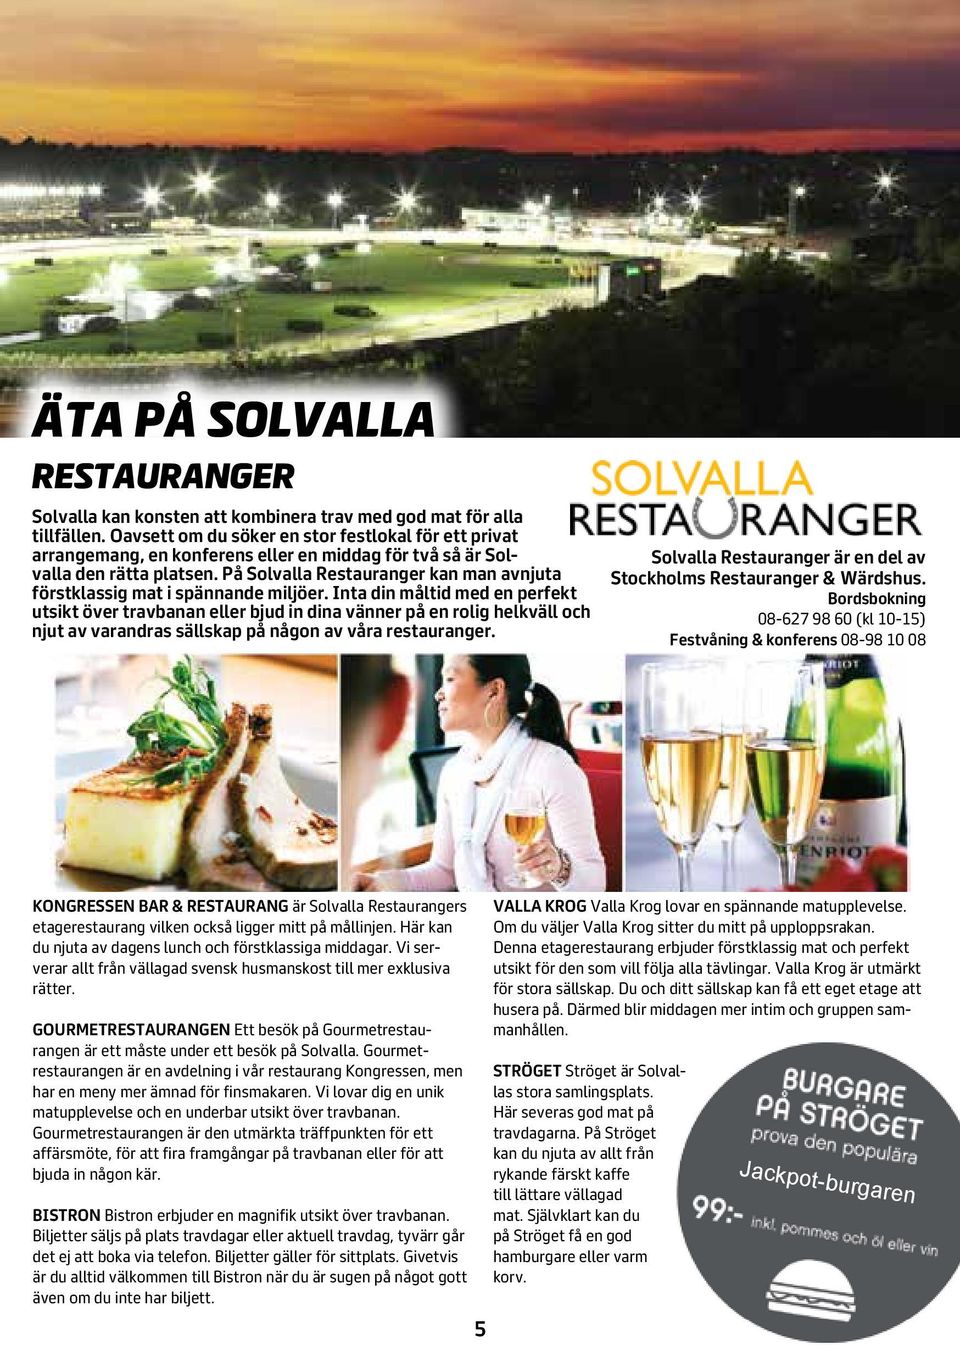 På Solvalla Restauranger kan man avnjuta förstklassig mat i spännande miljöer.